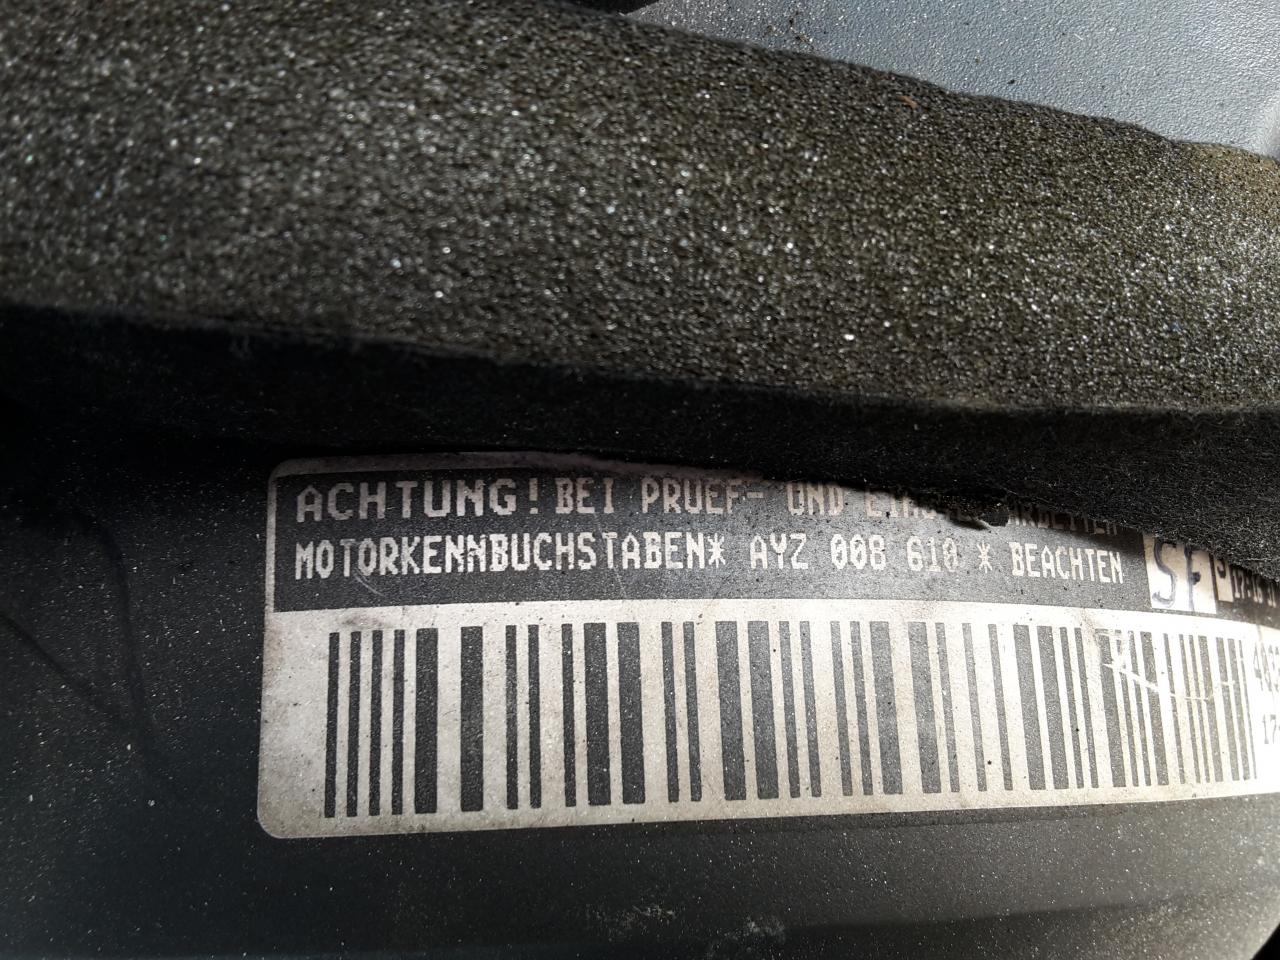 Motornummer med initialer af kvalitetskontrol af VW.jpg